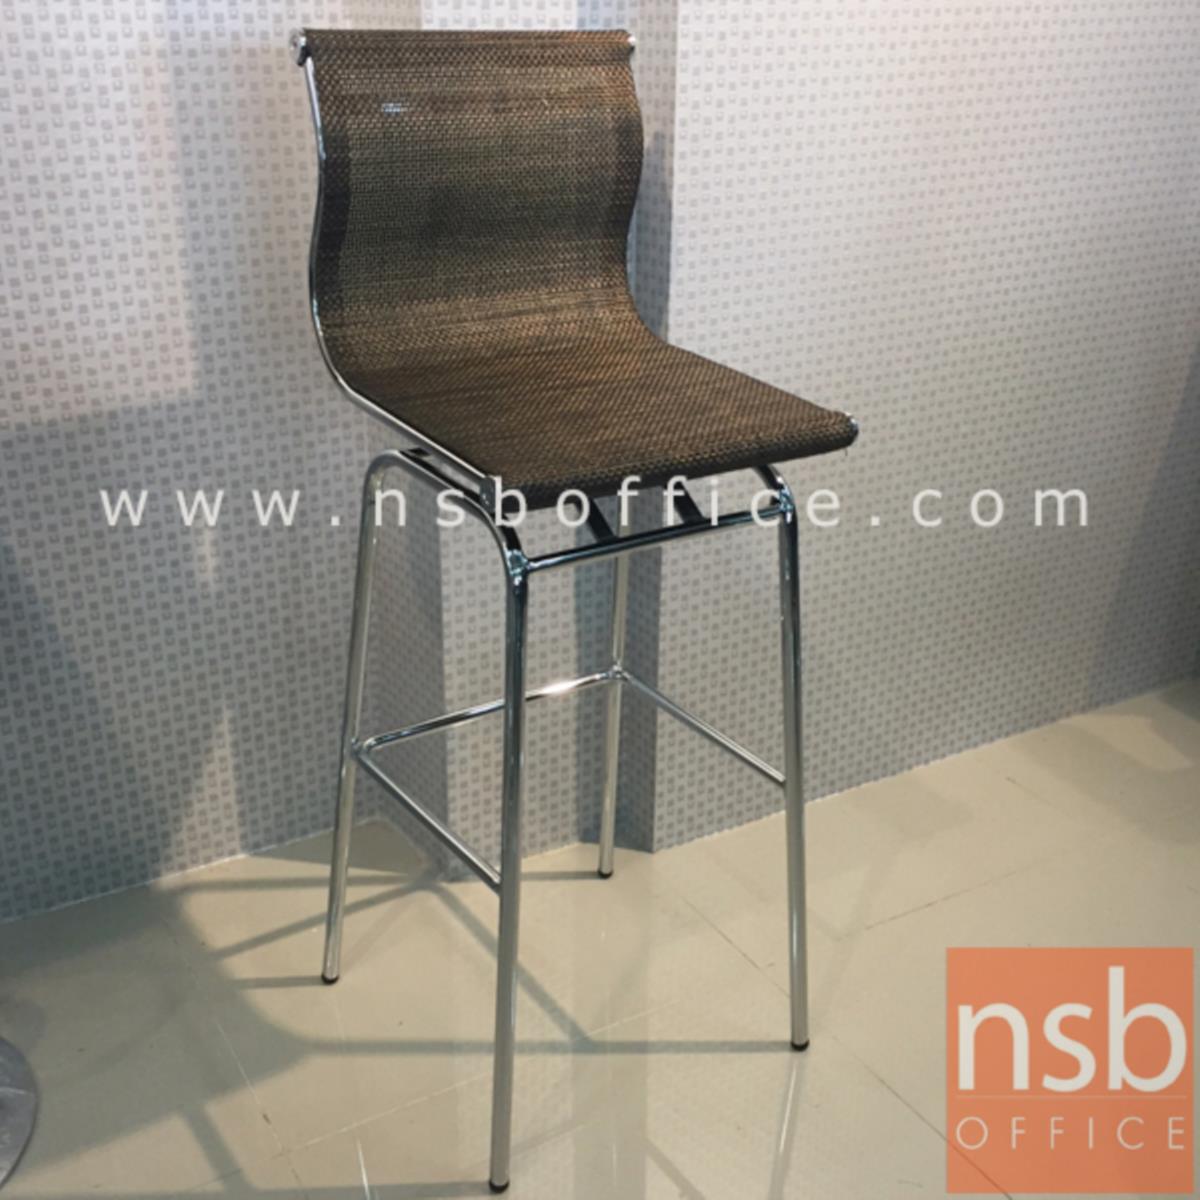 เก้าอี้บาร์สูงผ้าเน็ต รุ่น BH-8818 ขนาด 39W cm. โครงเหล็กชุบโครเมี่ยม 